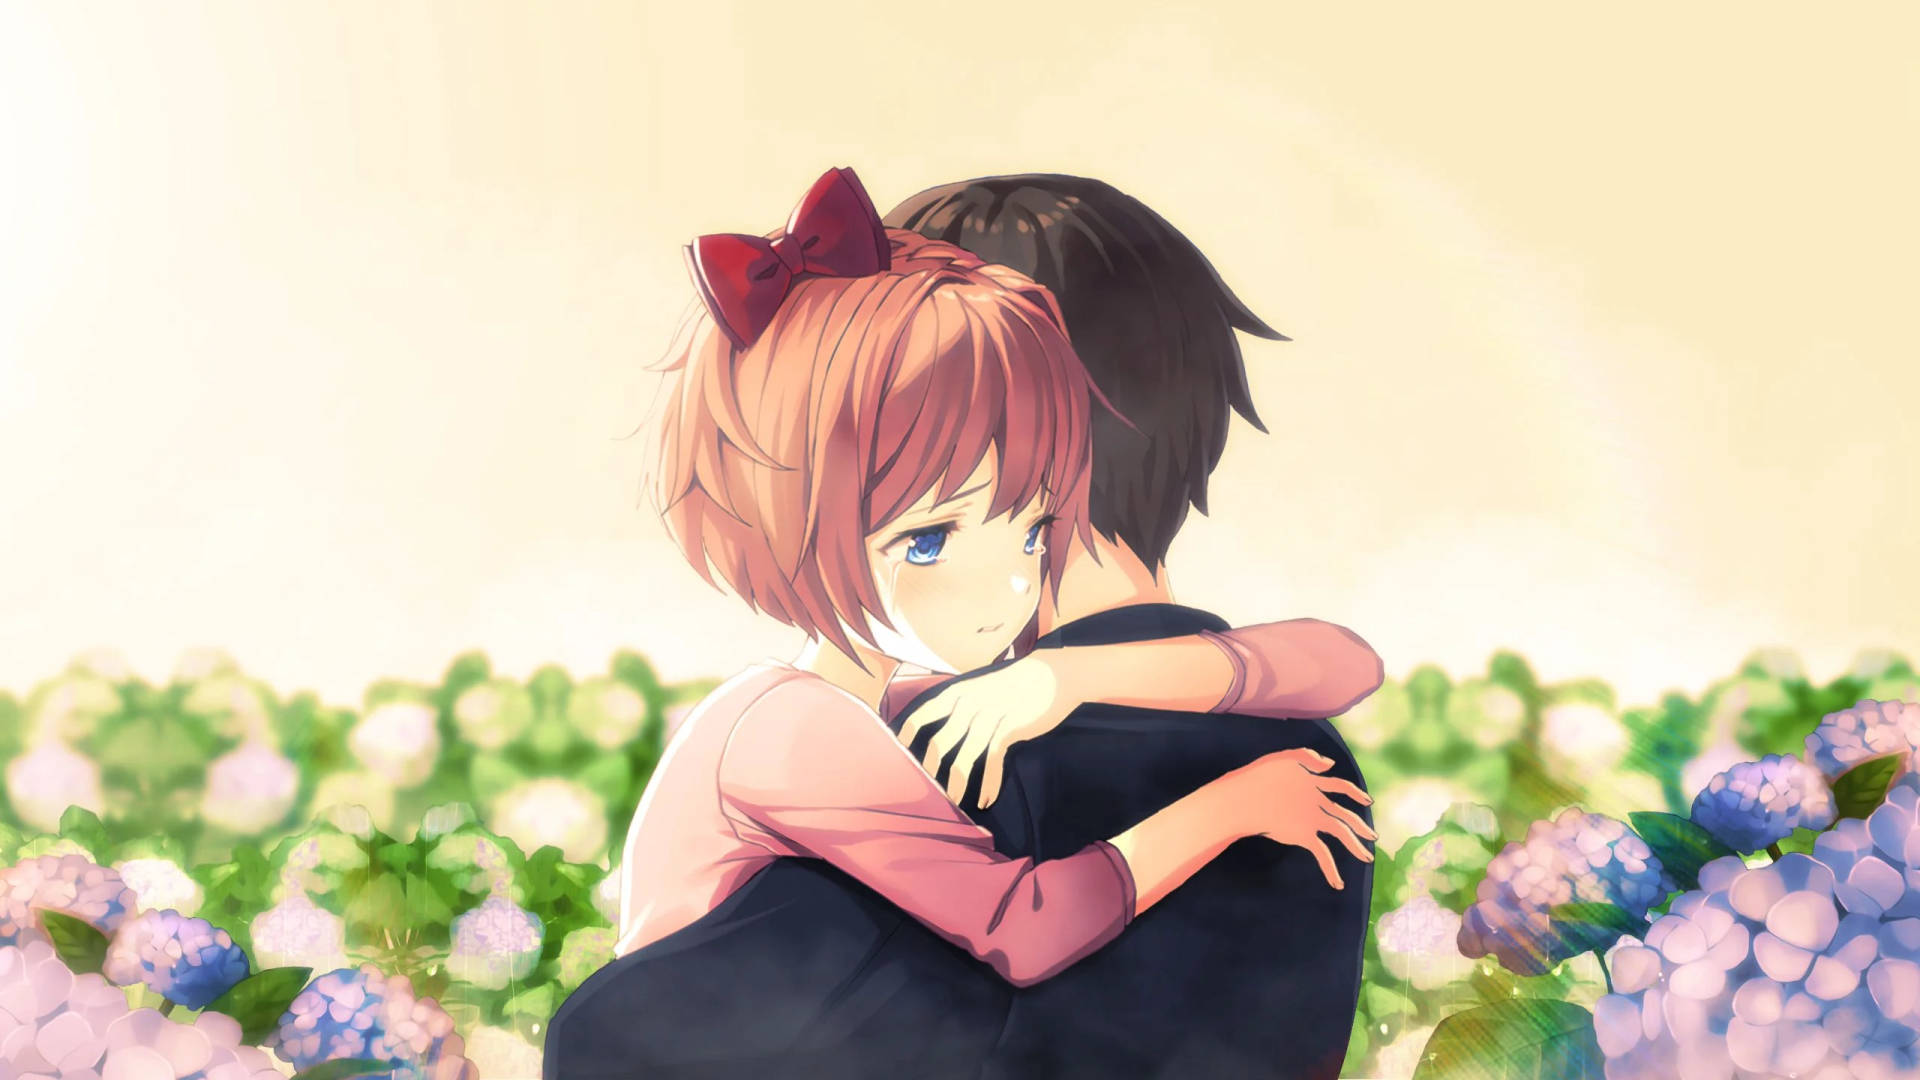 Anime Hug In Flower Garden Background